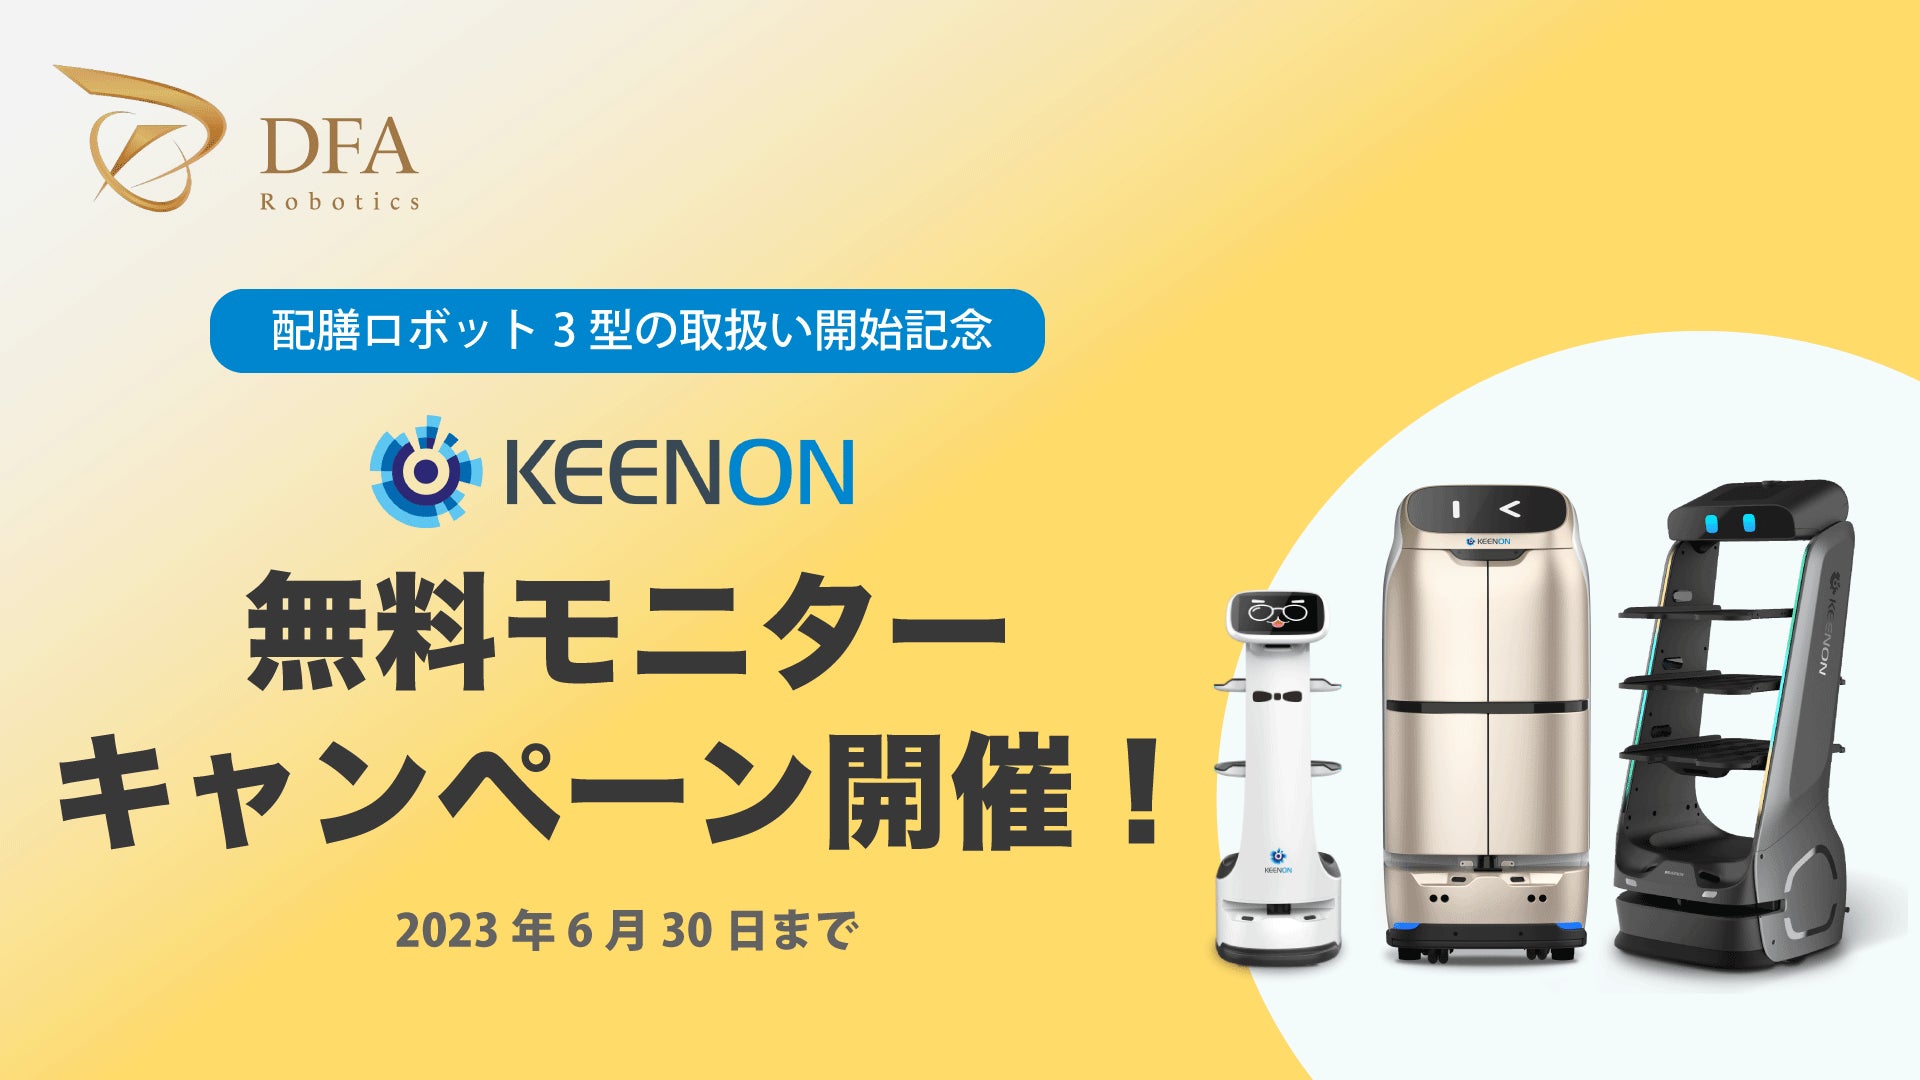 配膳・配送ロボット等のサービスロボットをリードするKEENON Roboticsが日本市場での成長と拡大を目指す。DFA Roboticsと地域密着型の提案を実現